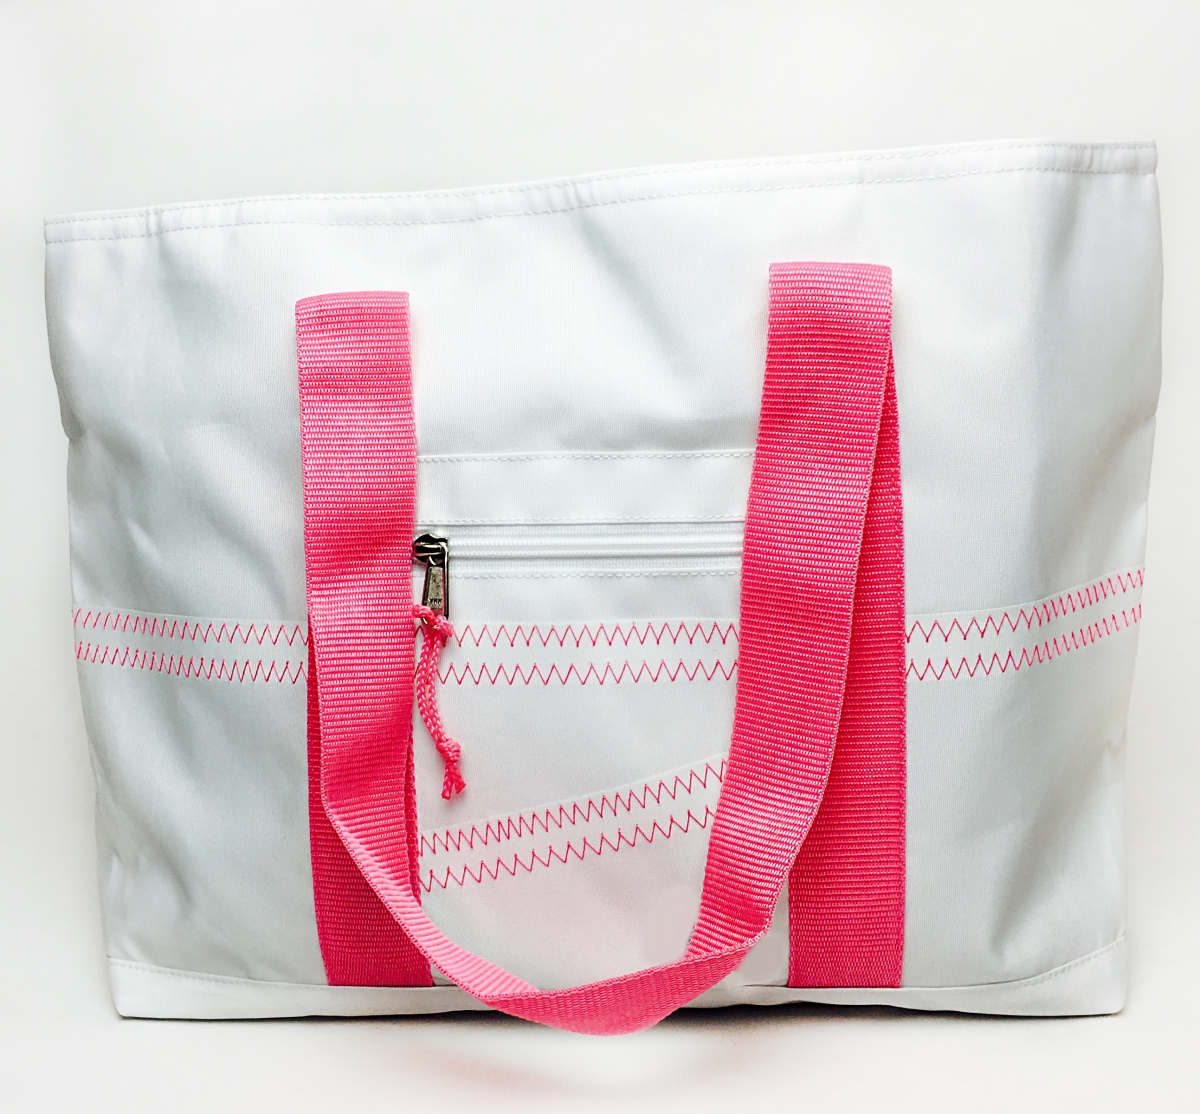 Sailorbags 201pk Cabana Medium Tote Bag, Pink